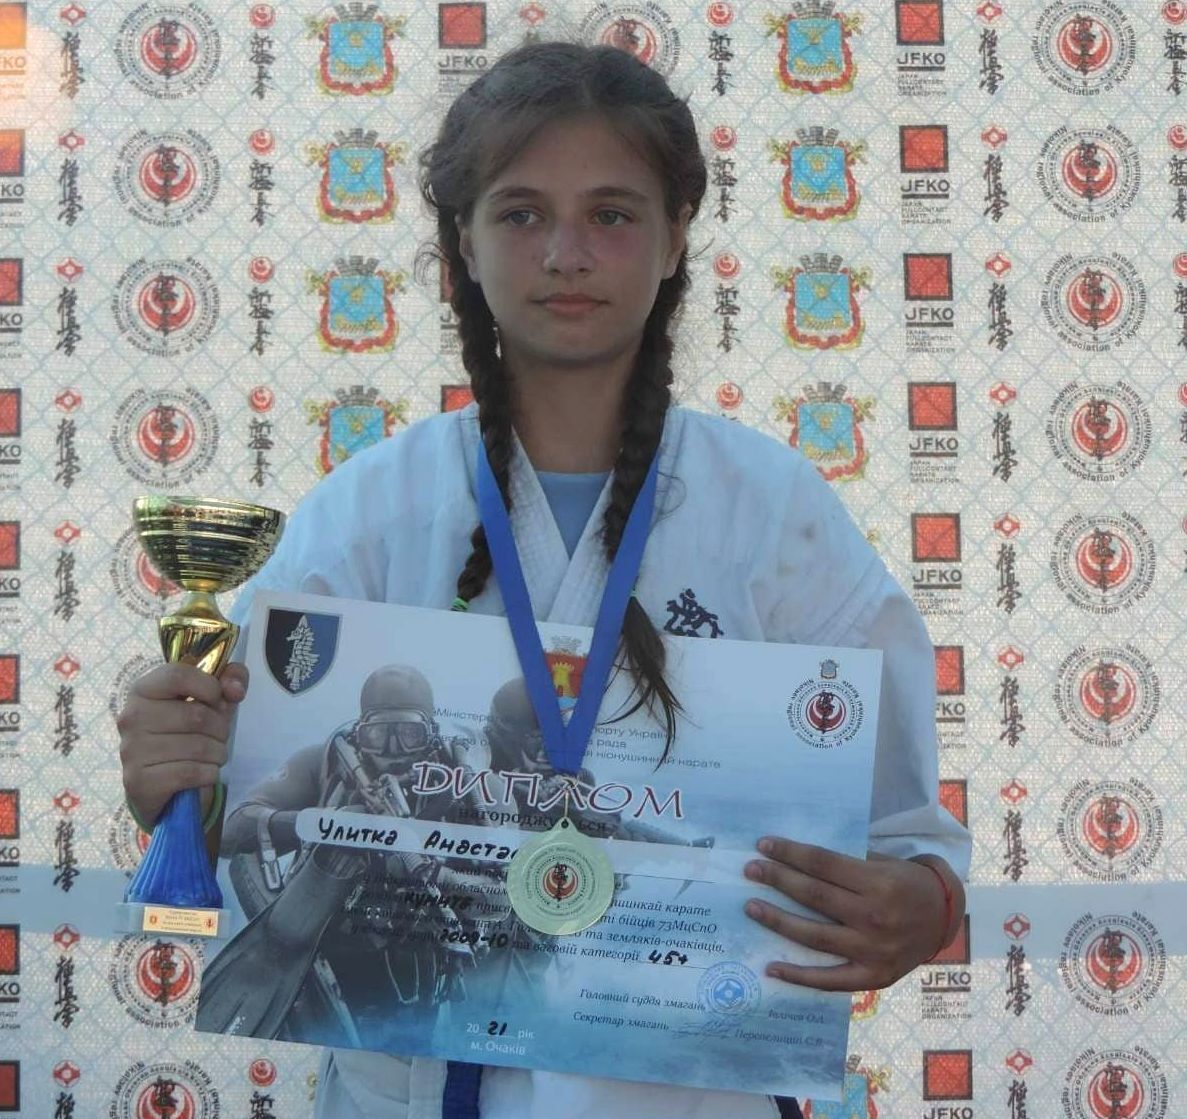 Анастасия Улитко (фото с турнира в Очакове).